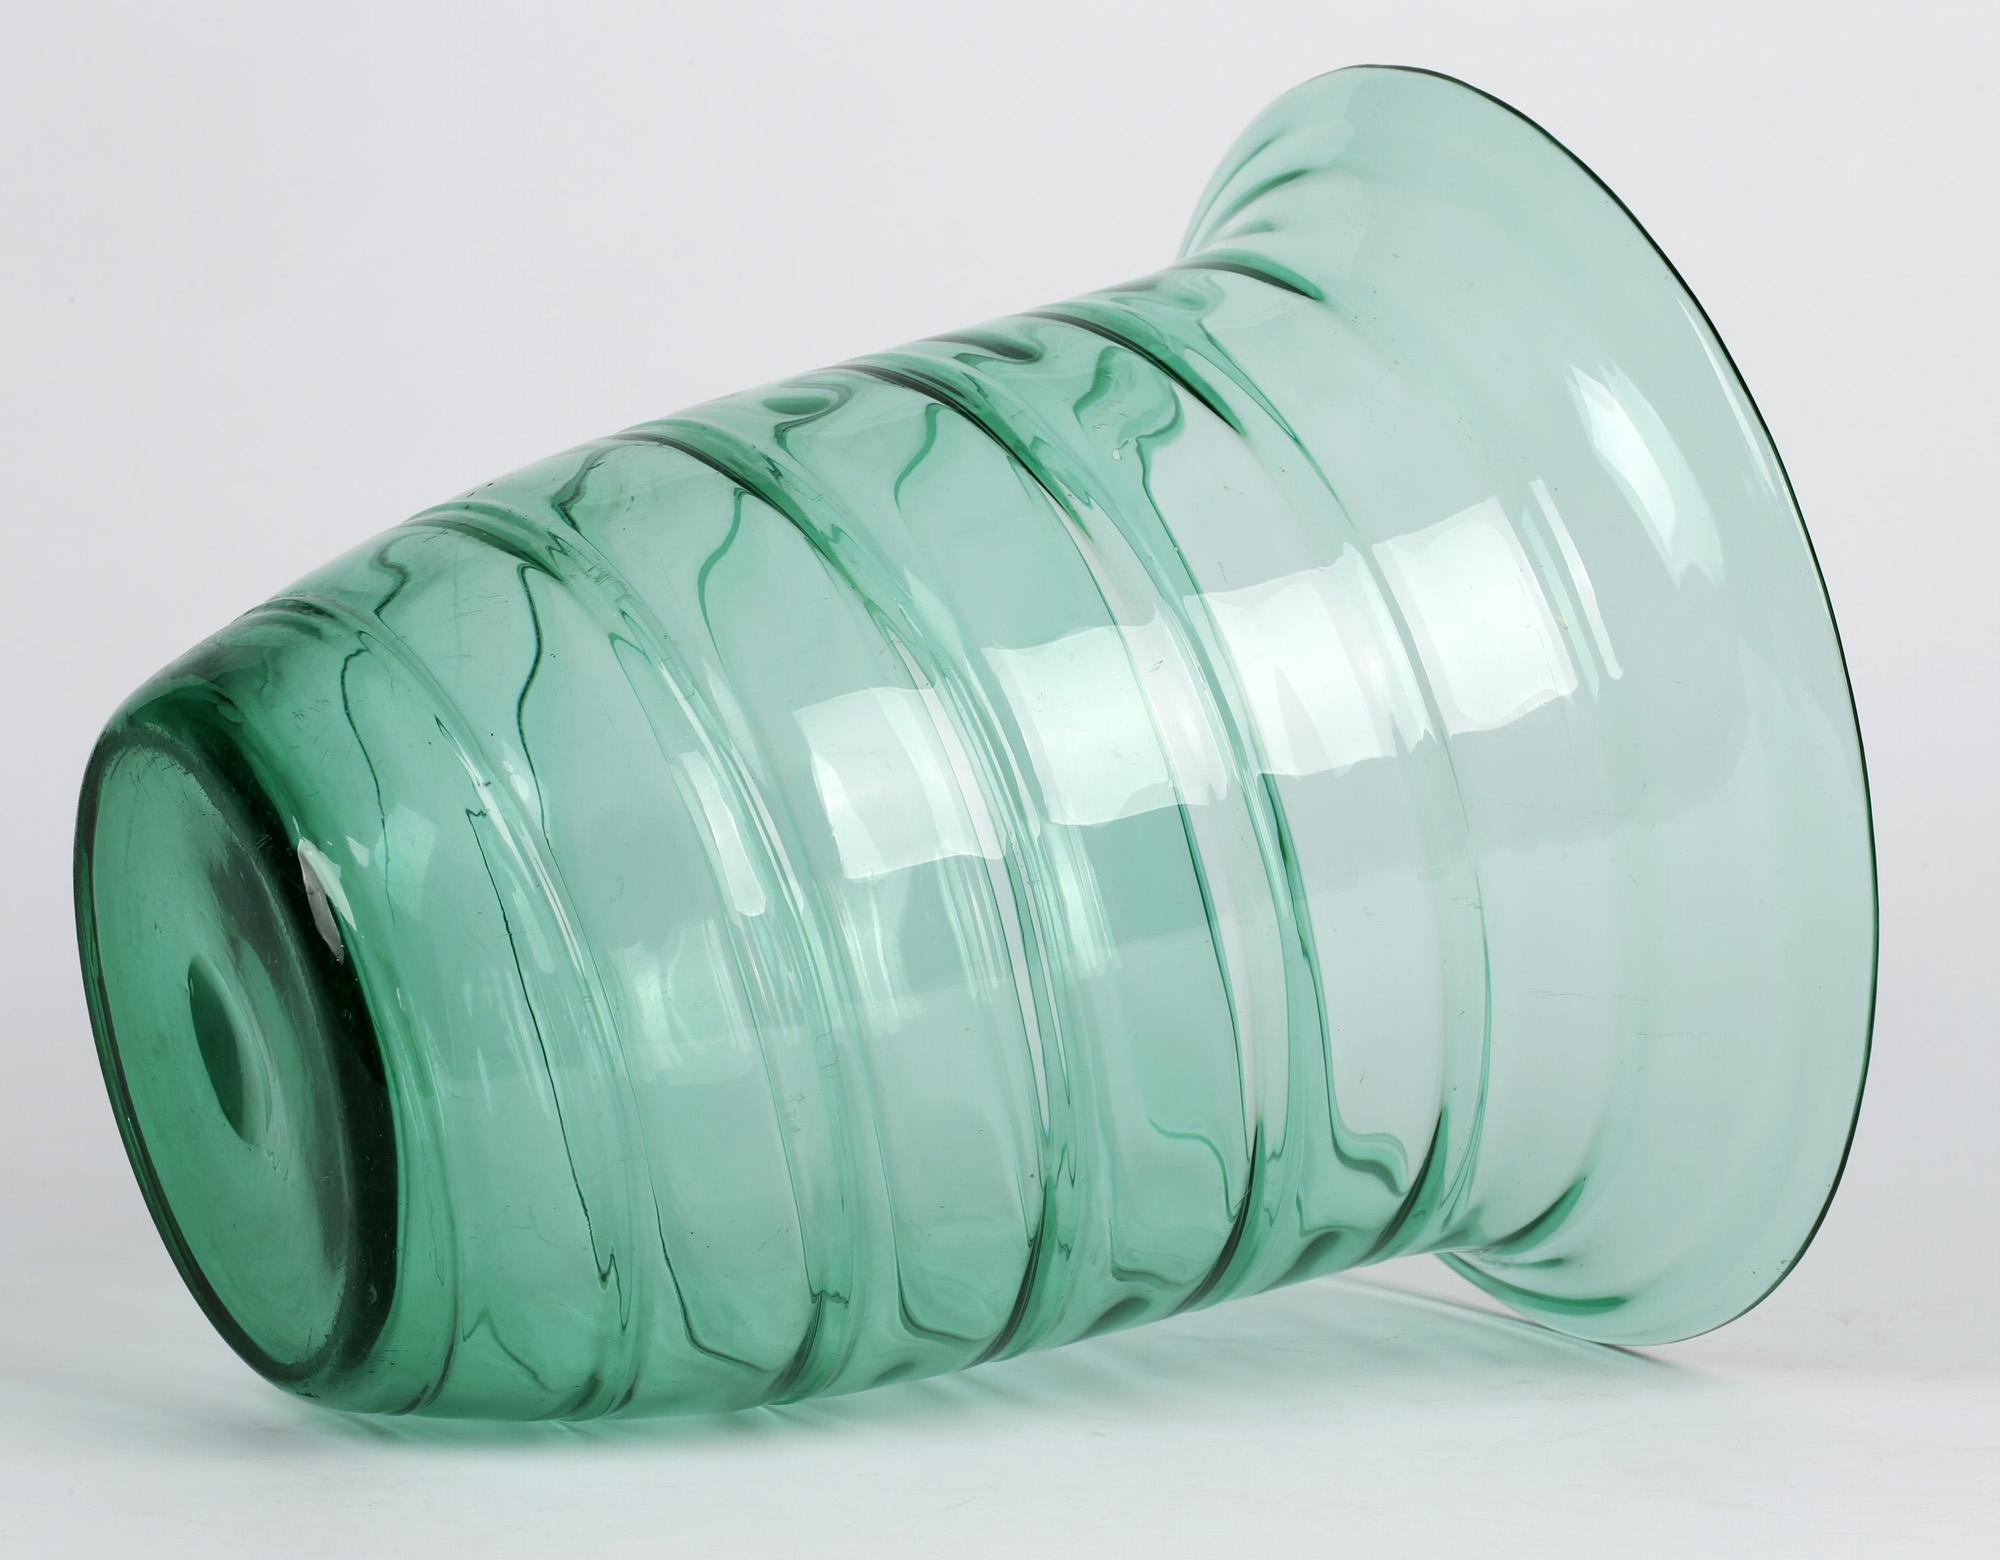 whitefriars green glass vase